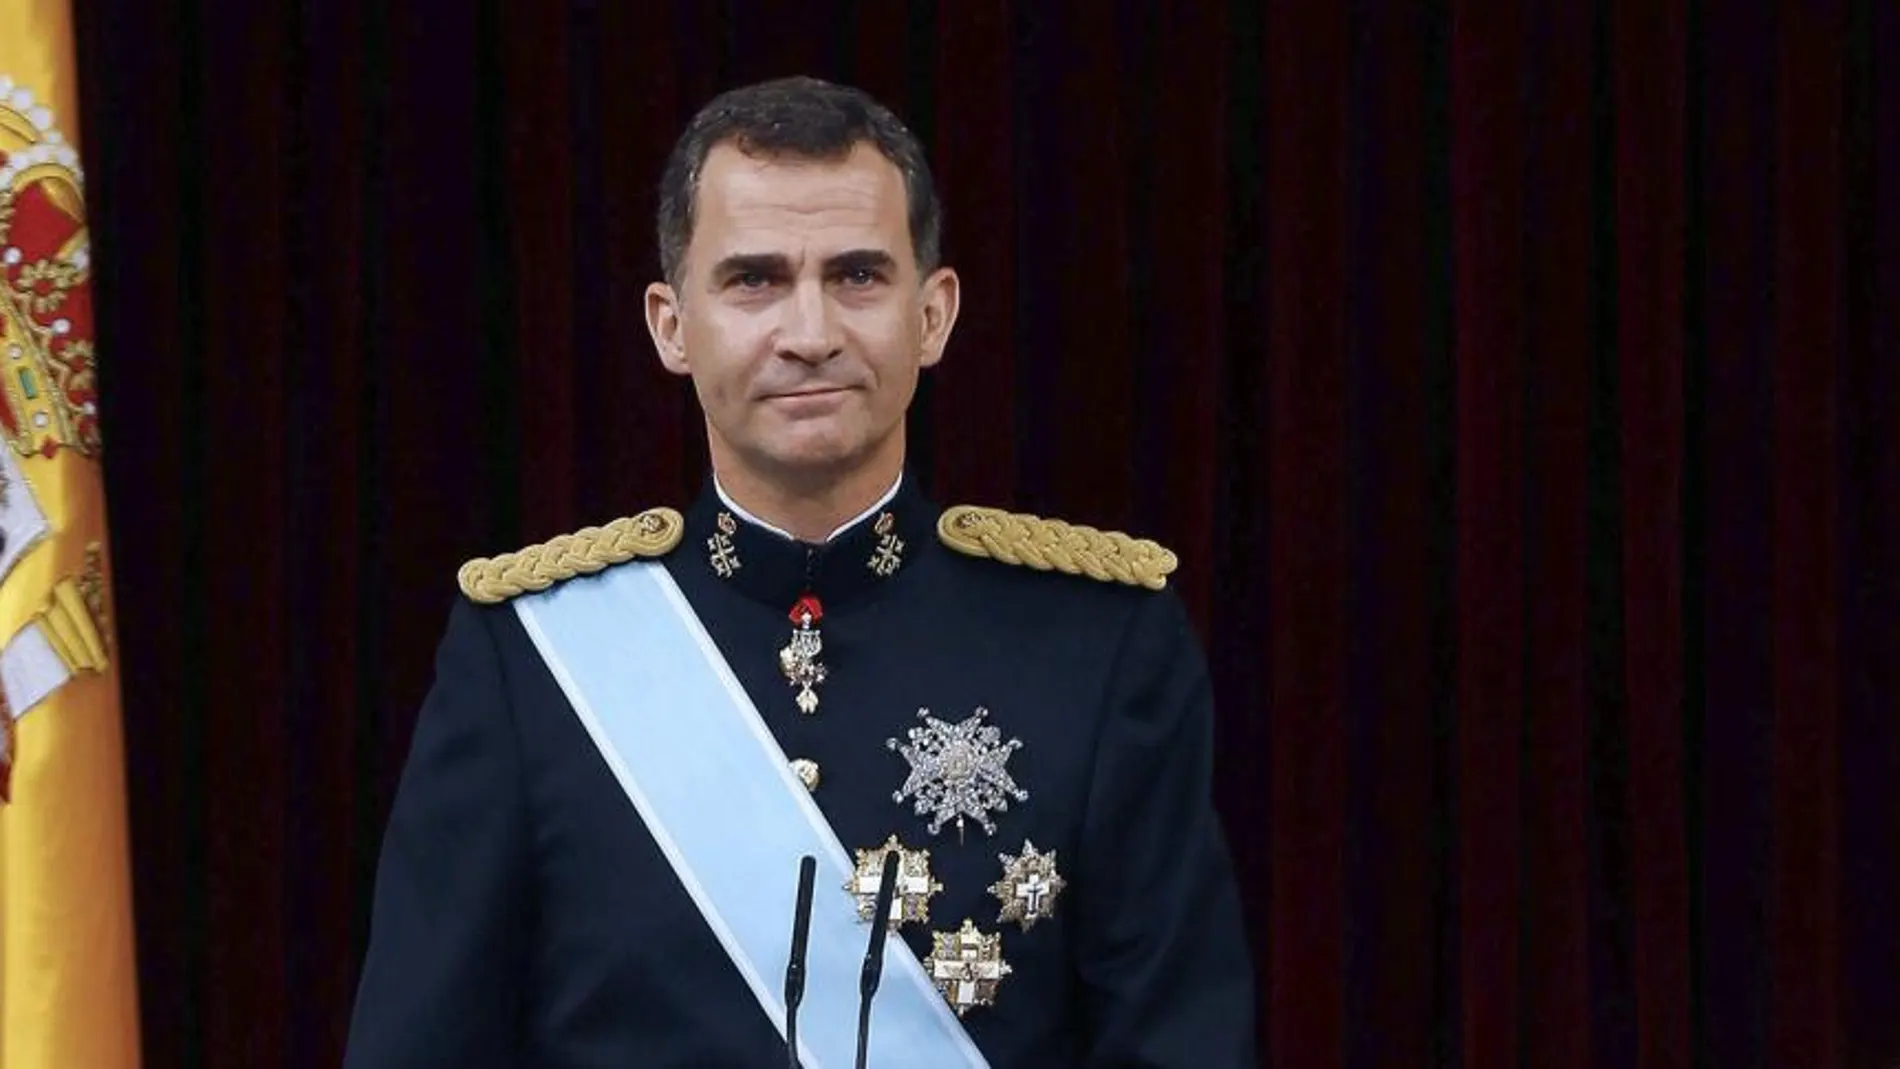 El discurso del Rey gusta a PP y PSOE frente a la frialdad de Mas y Urkullu